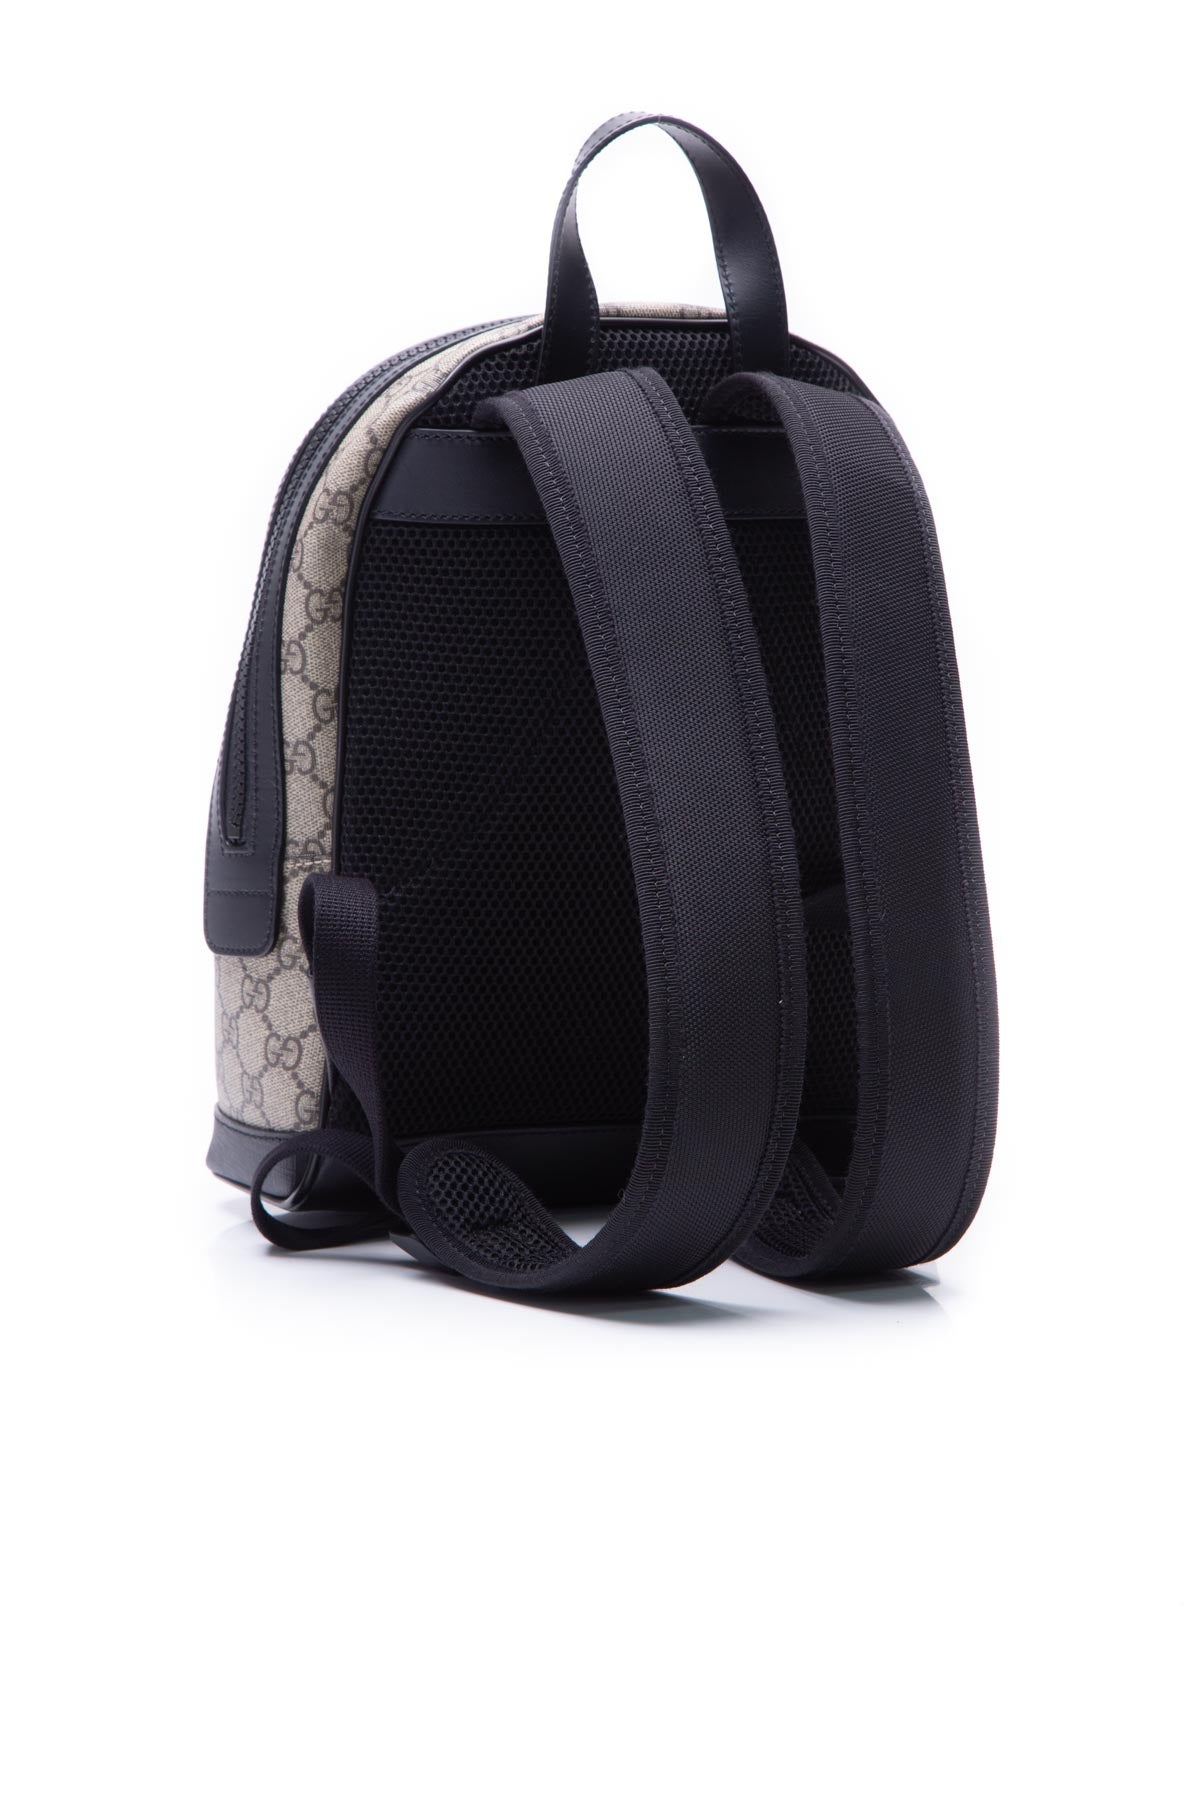 Gucci Black & Original GG Supreme Canvas Eden Backpack Small